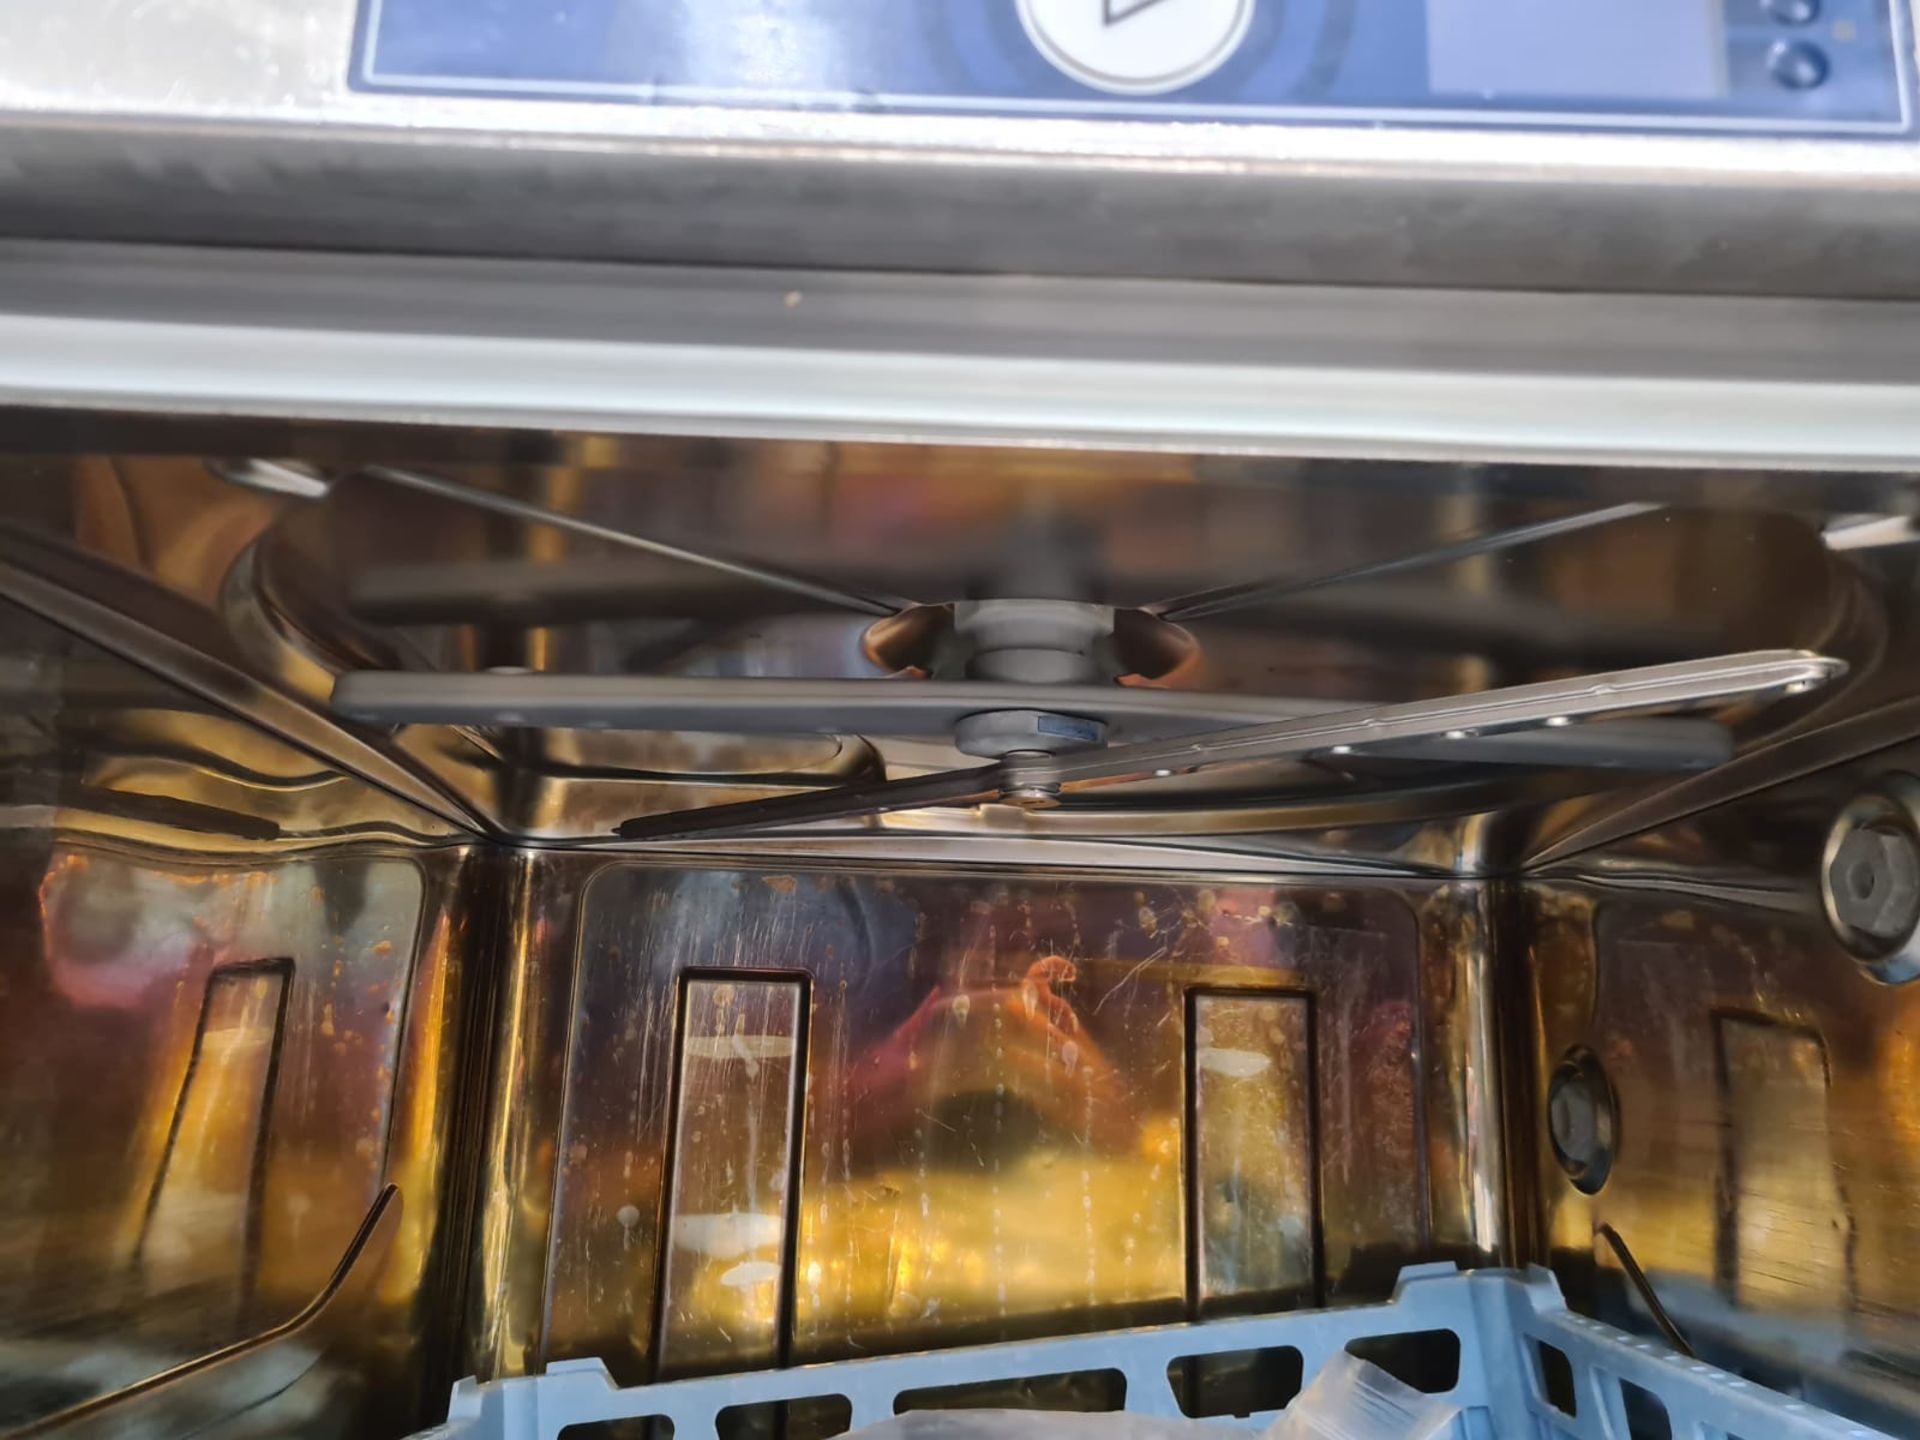 Hobart Commercial Dishwasher - Image 5 of 7